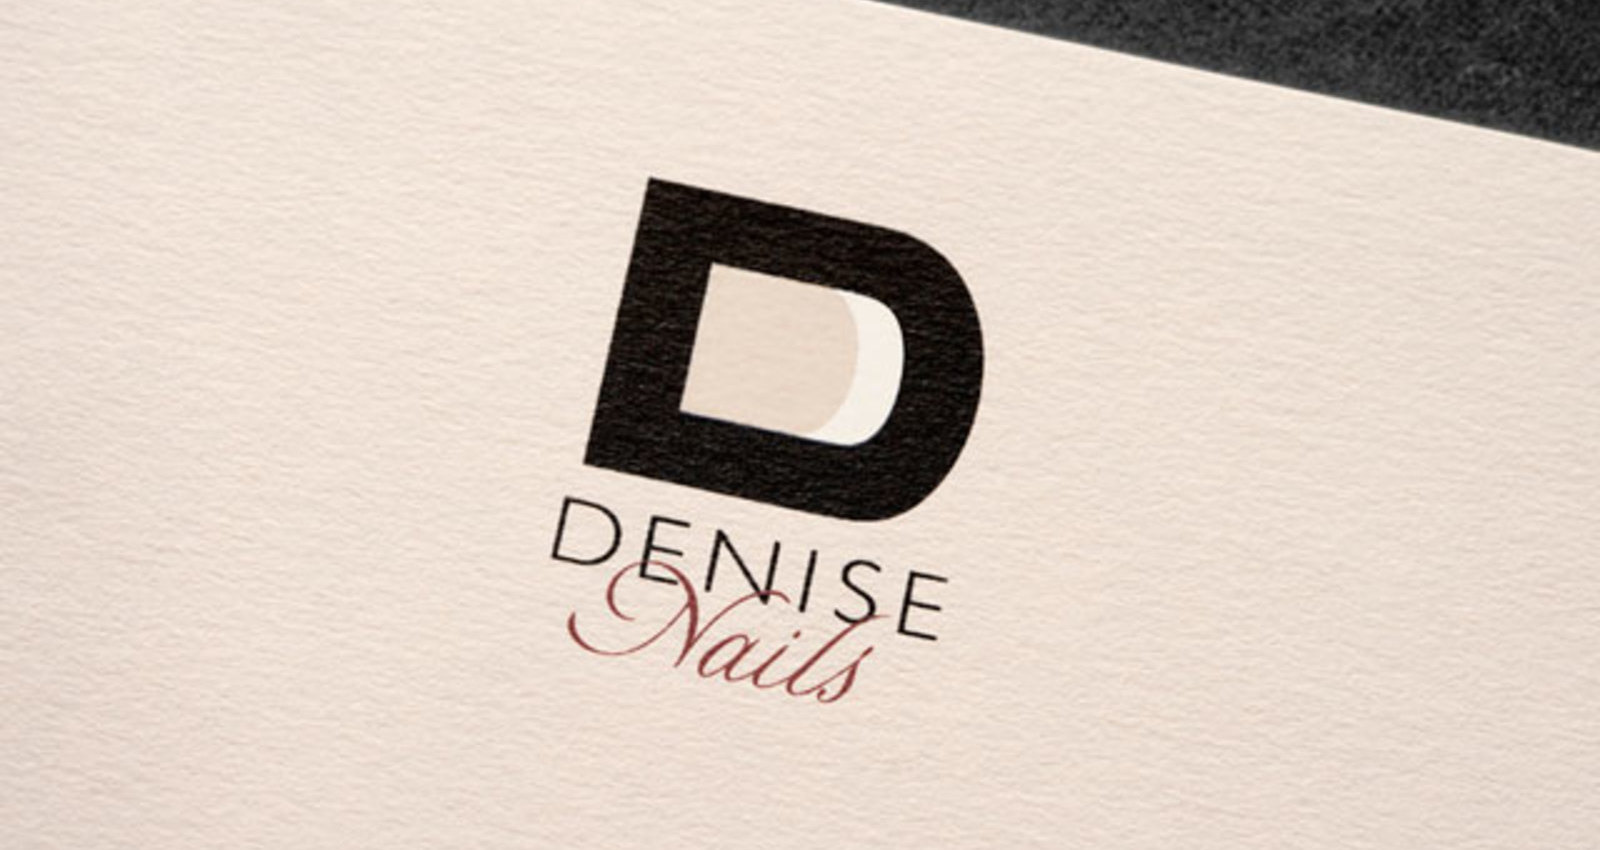 Denise Nails